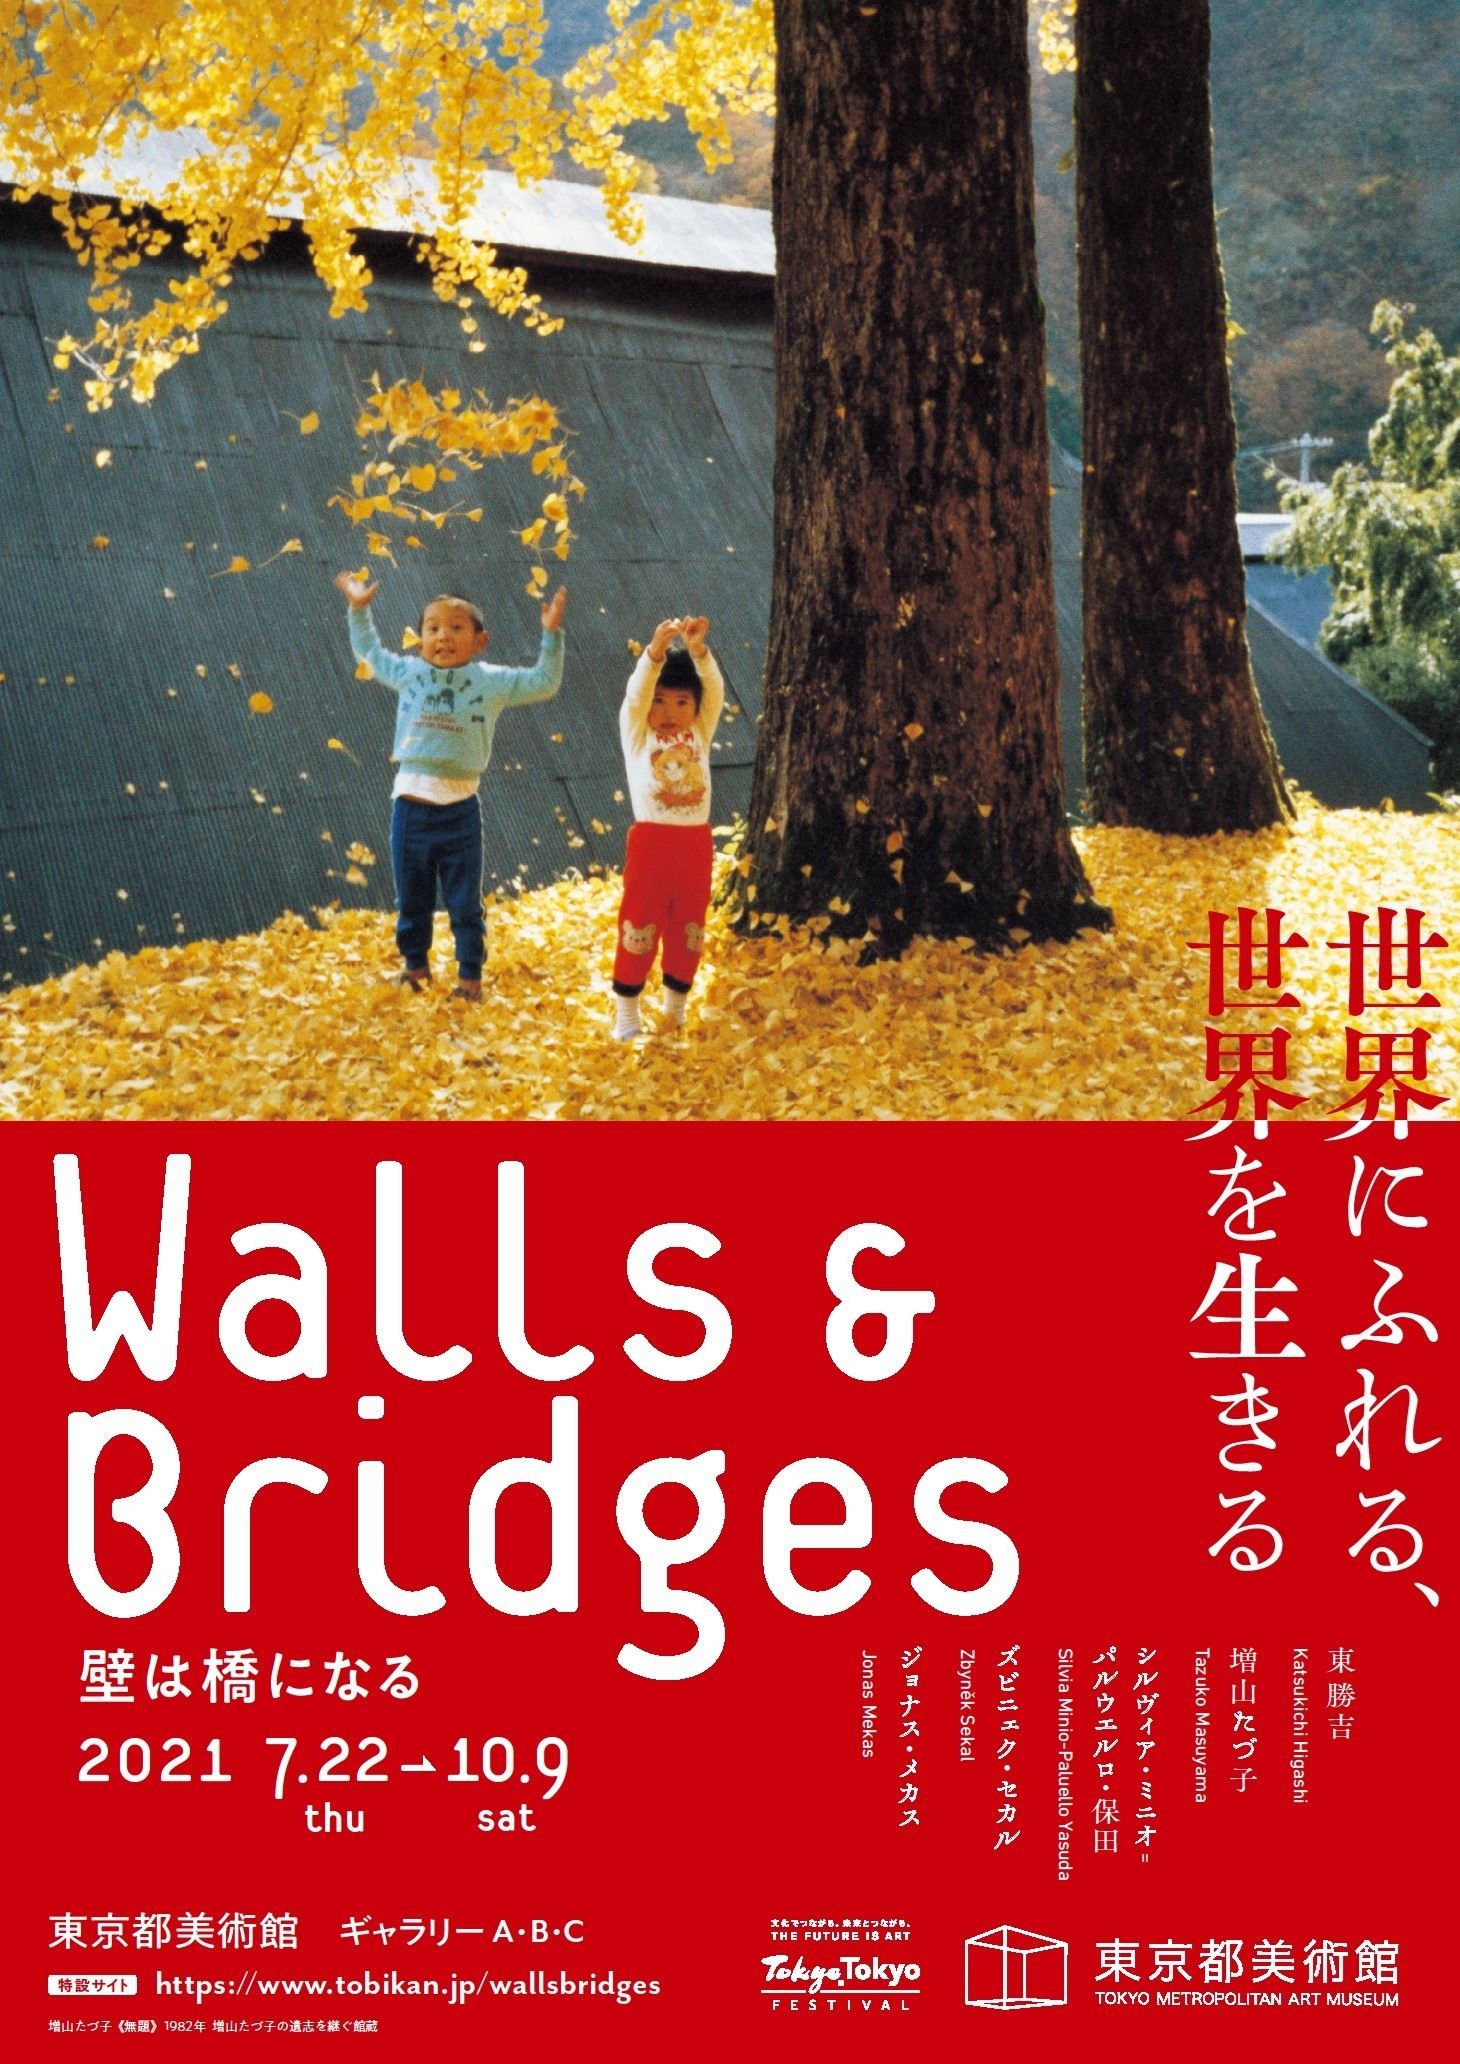 『Walls & Bridges 世界にふれる、世界を生きる』